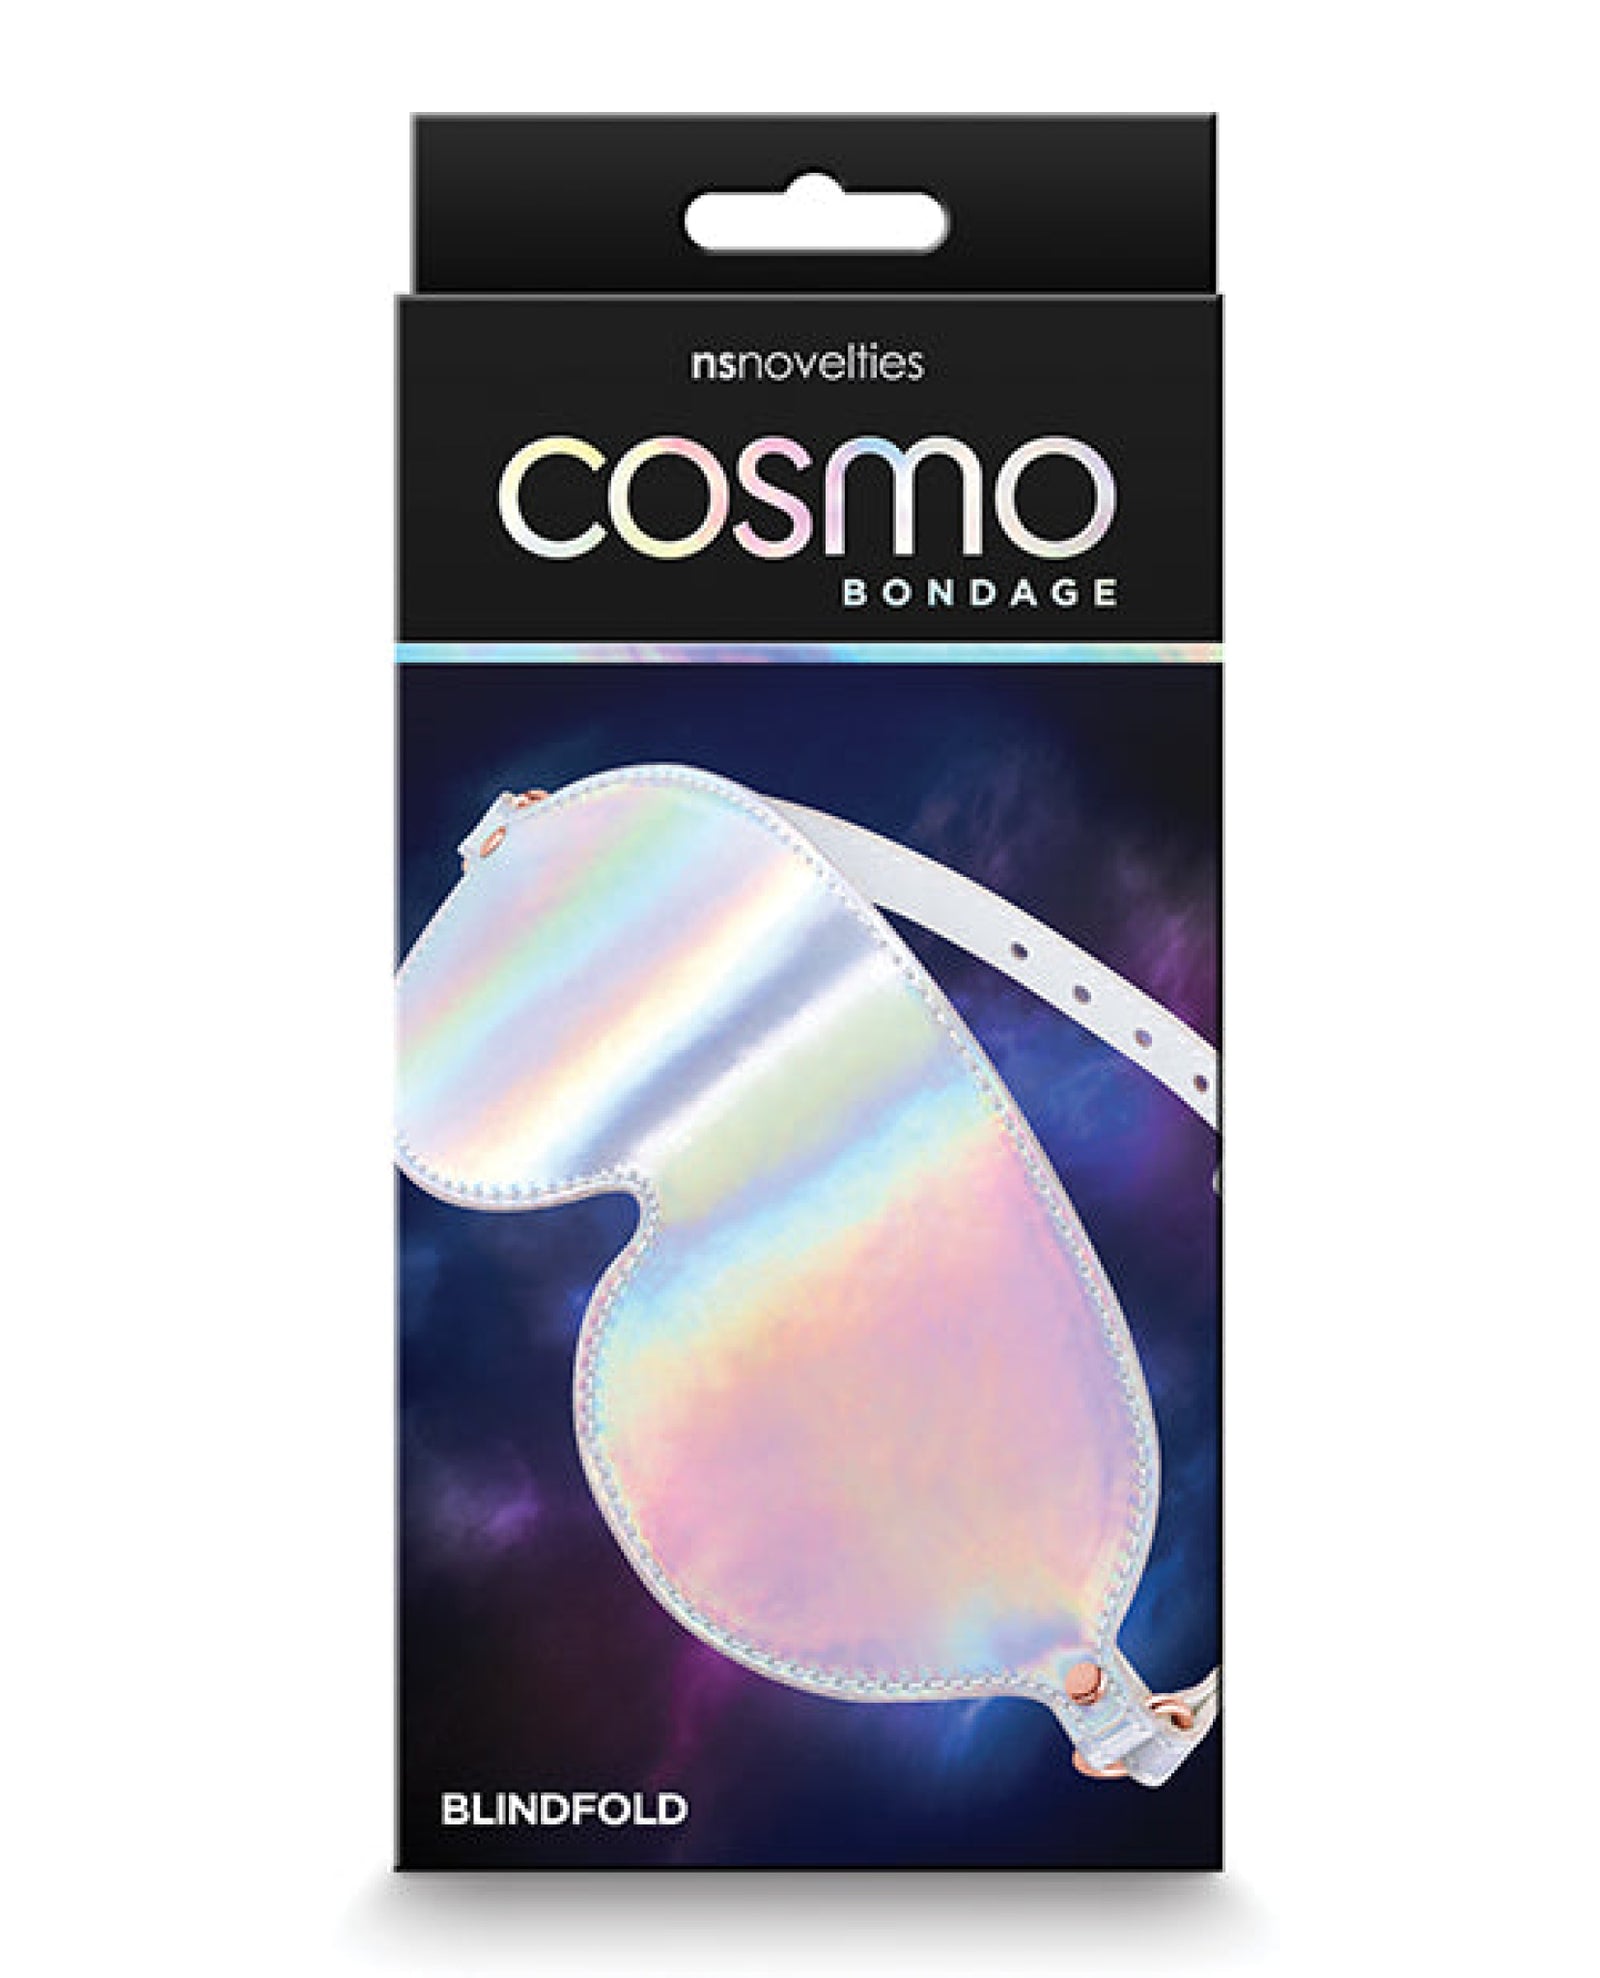 Cosmo Bondage Blindfold - Rainbow Cosmo